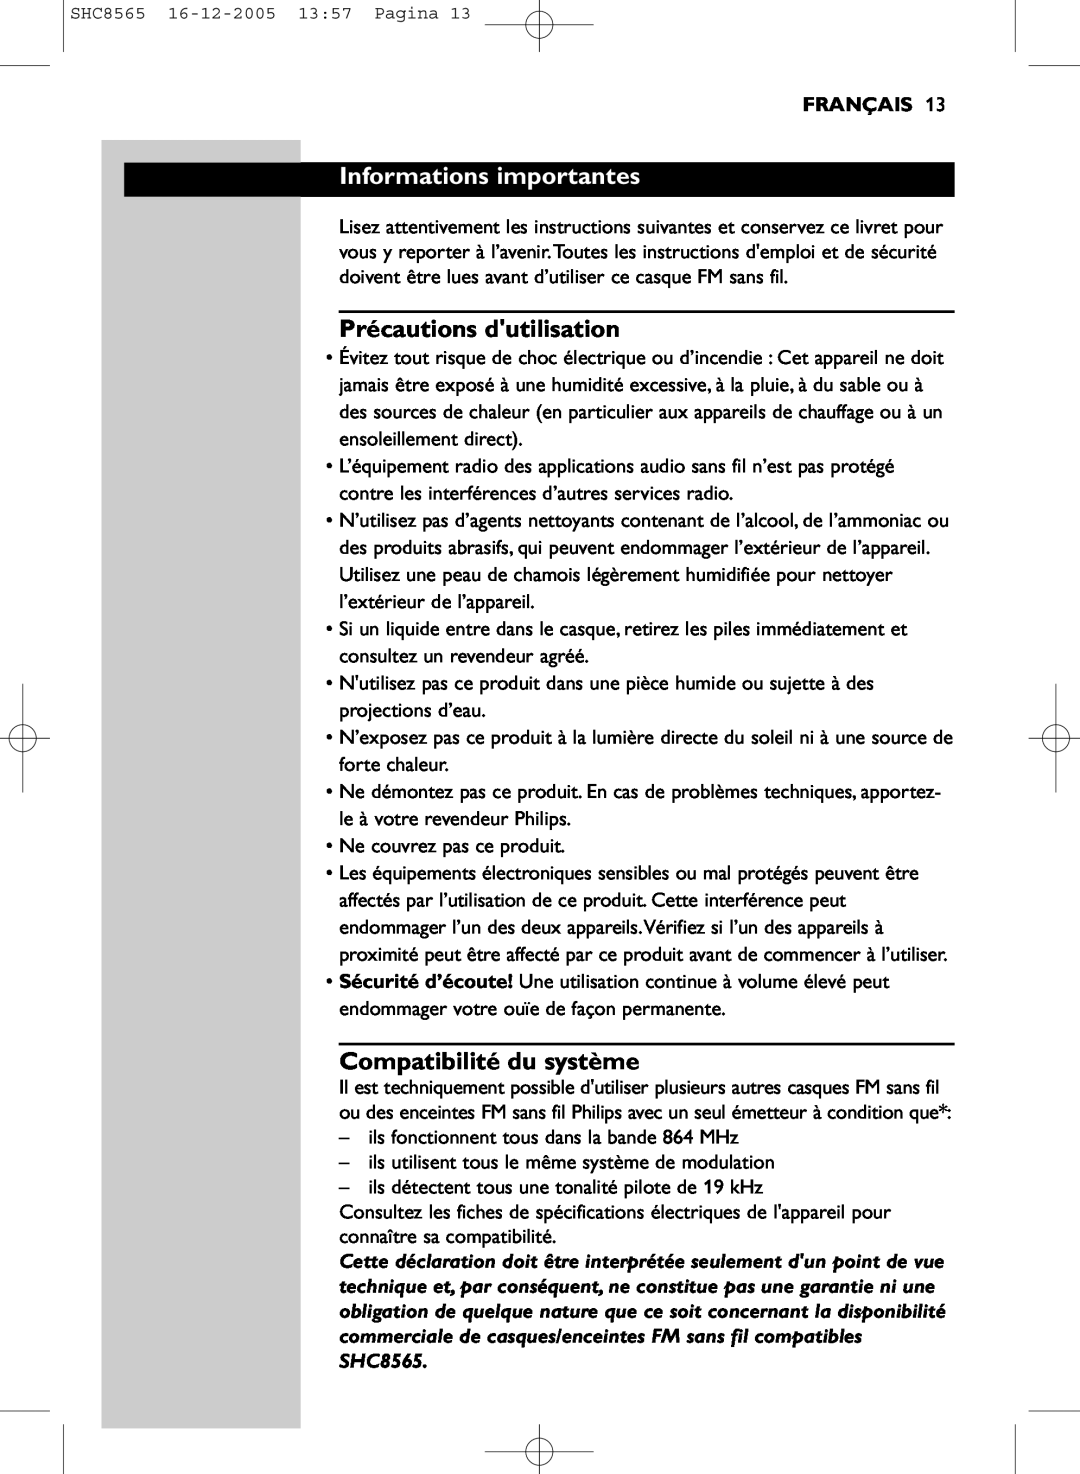 Philips SHC8565 manual Informations importantes, Précautions dutilisation, Compatibilité du système, Français 